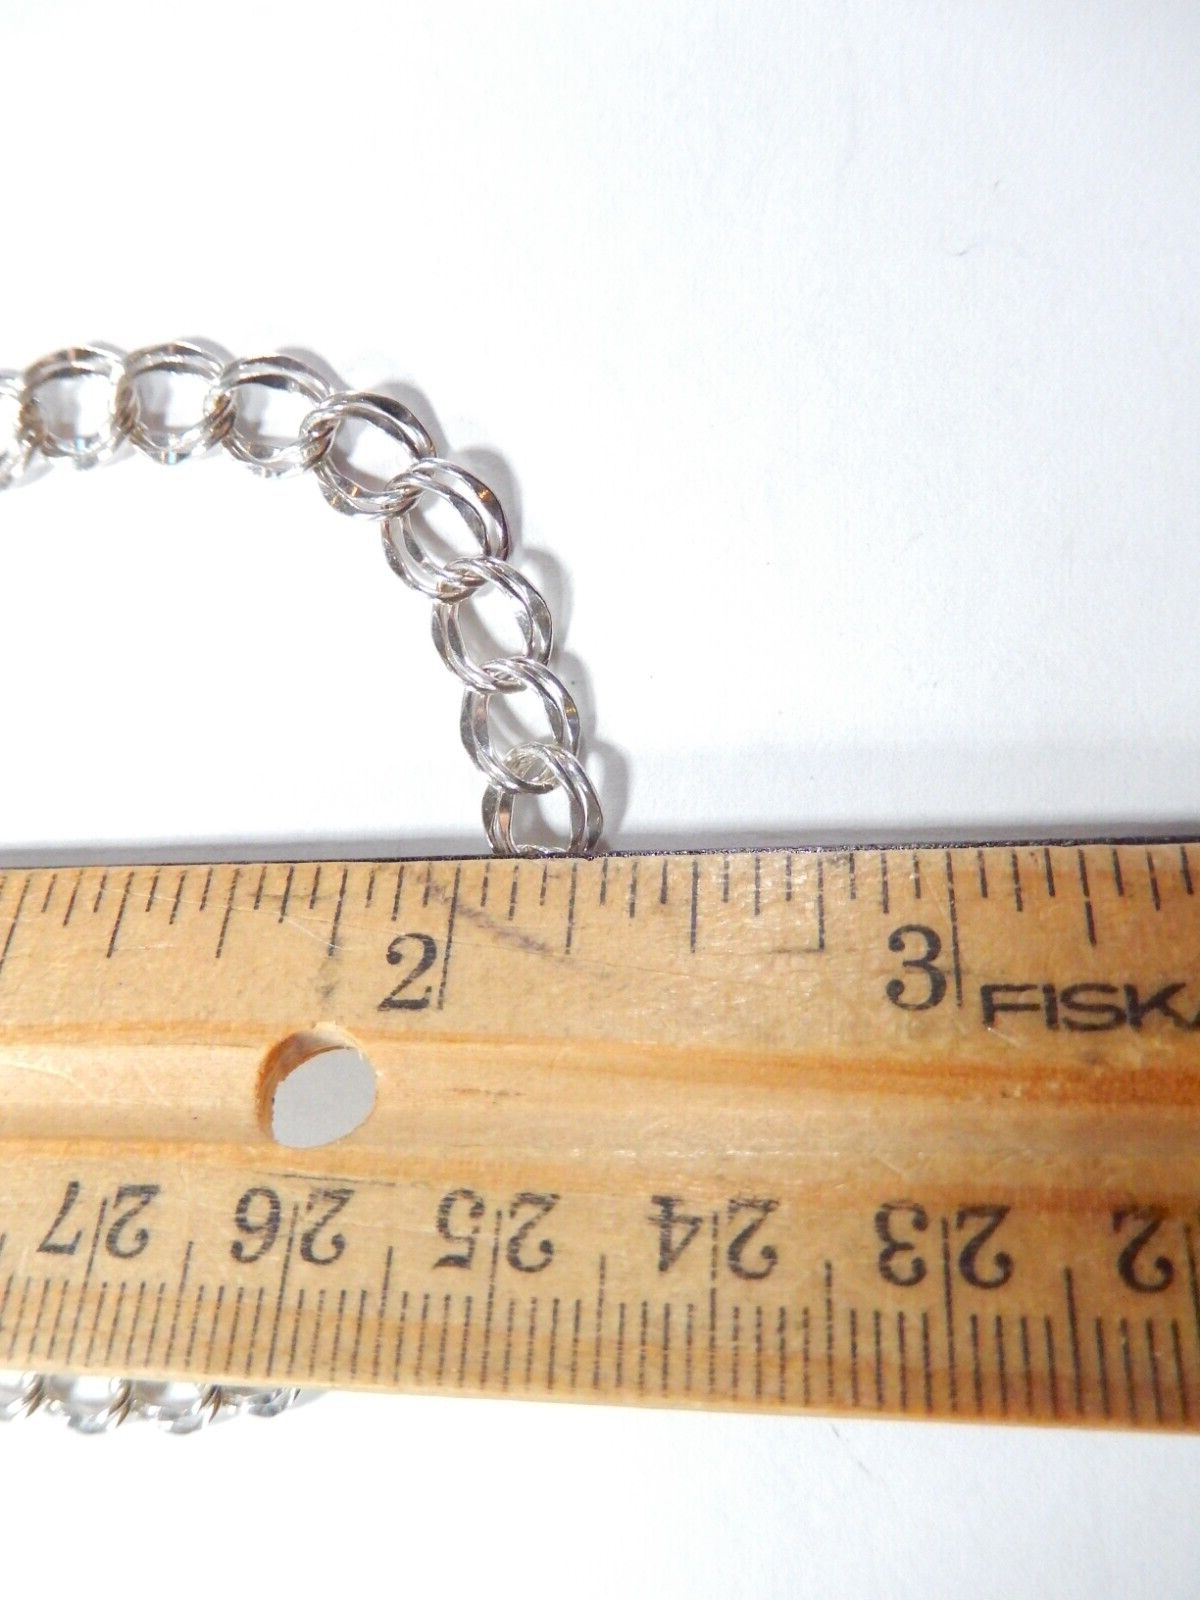 *VINTAGE** Sterling Silver Double Link Charm Bracelet - 7"